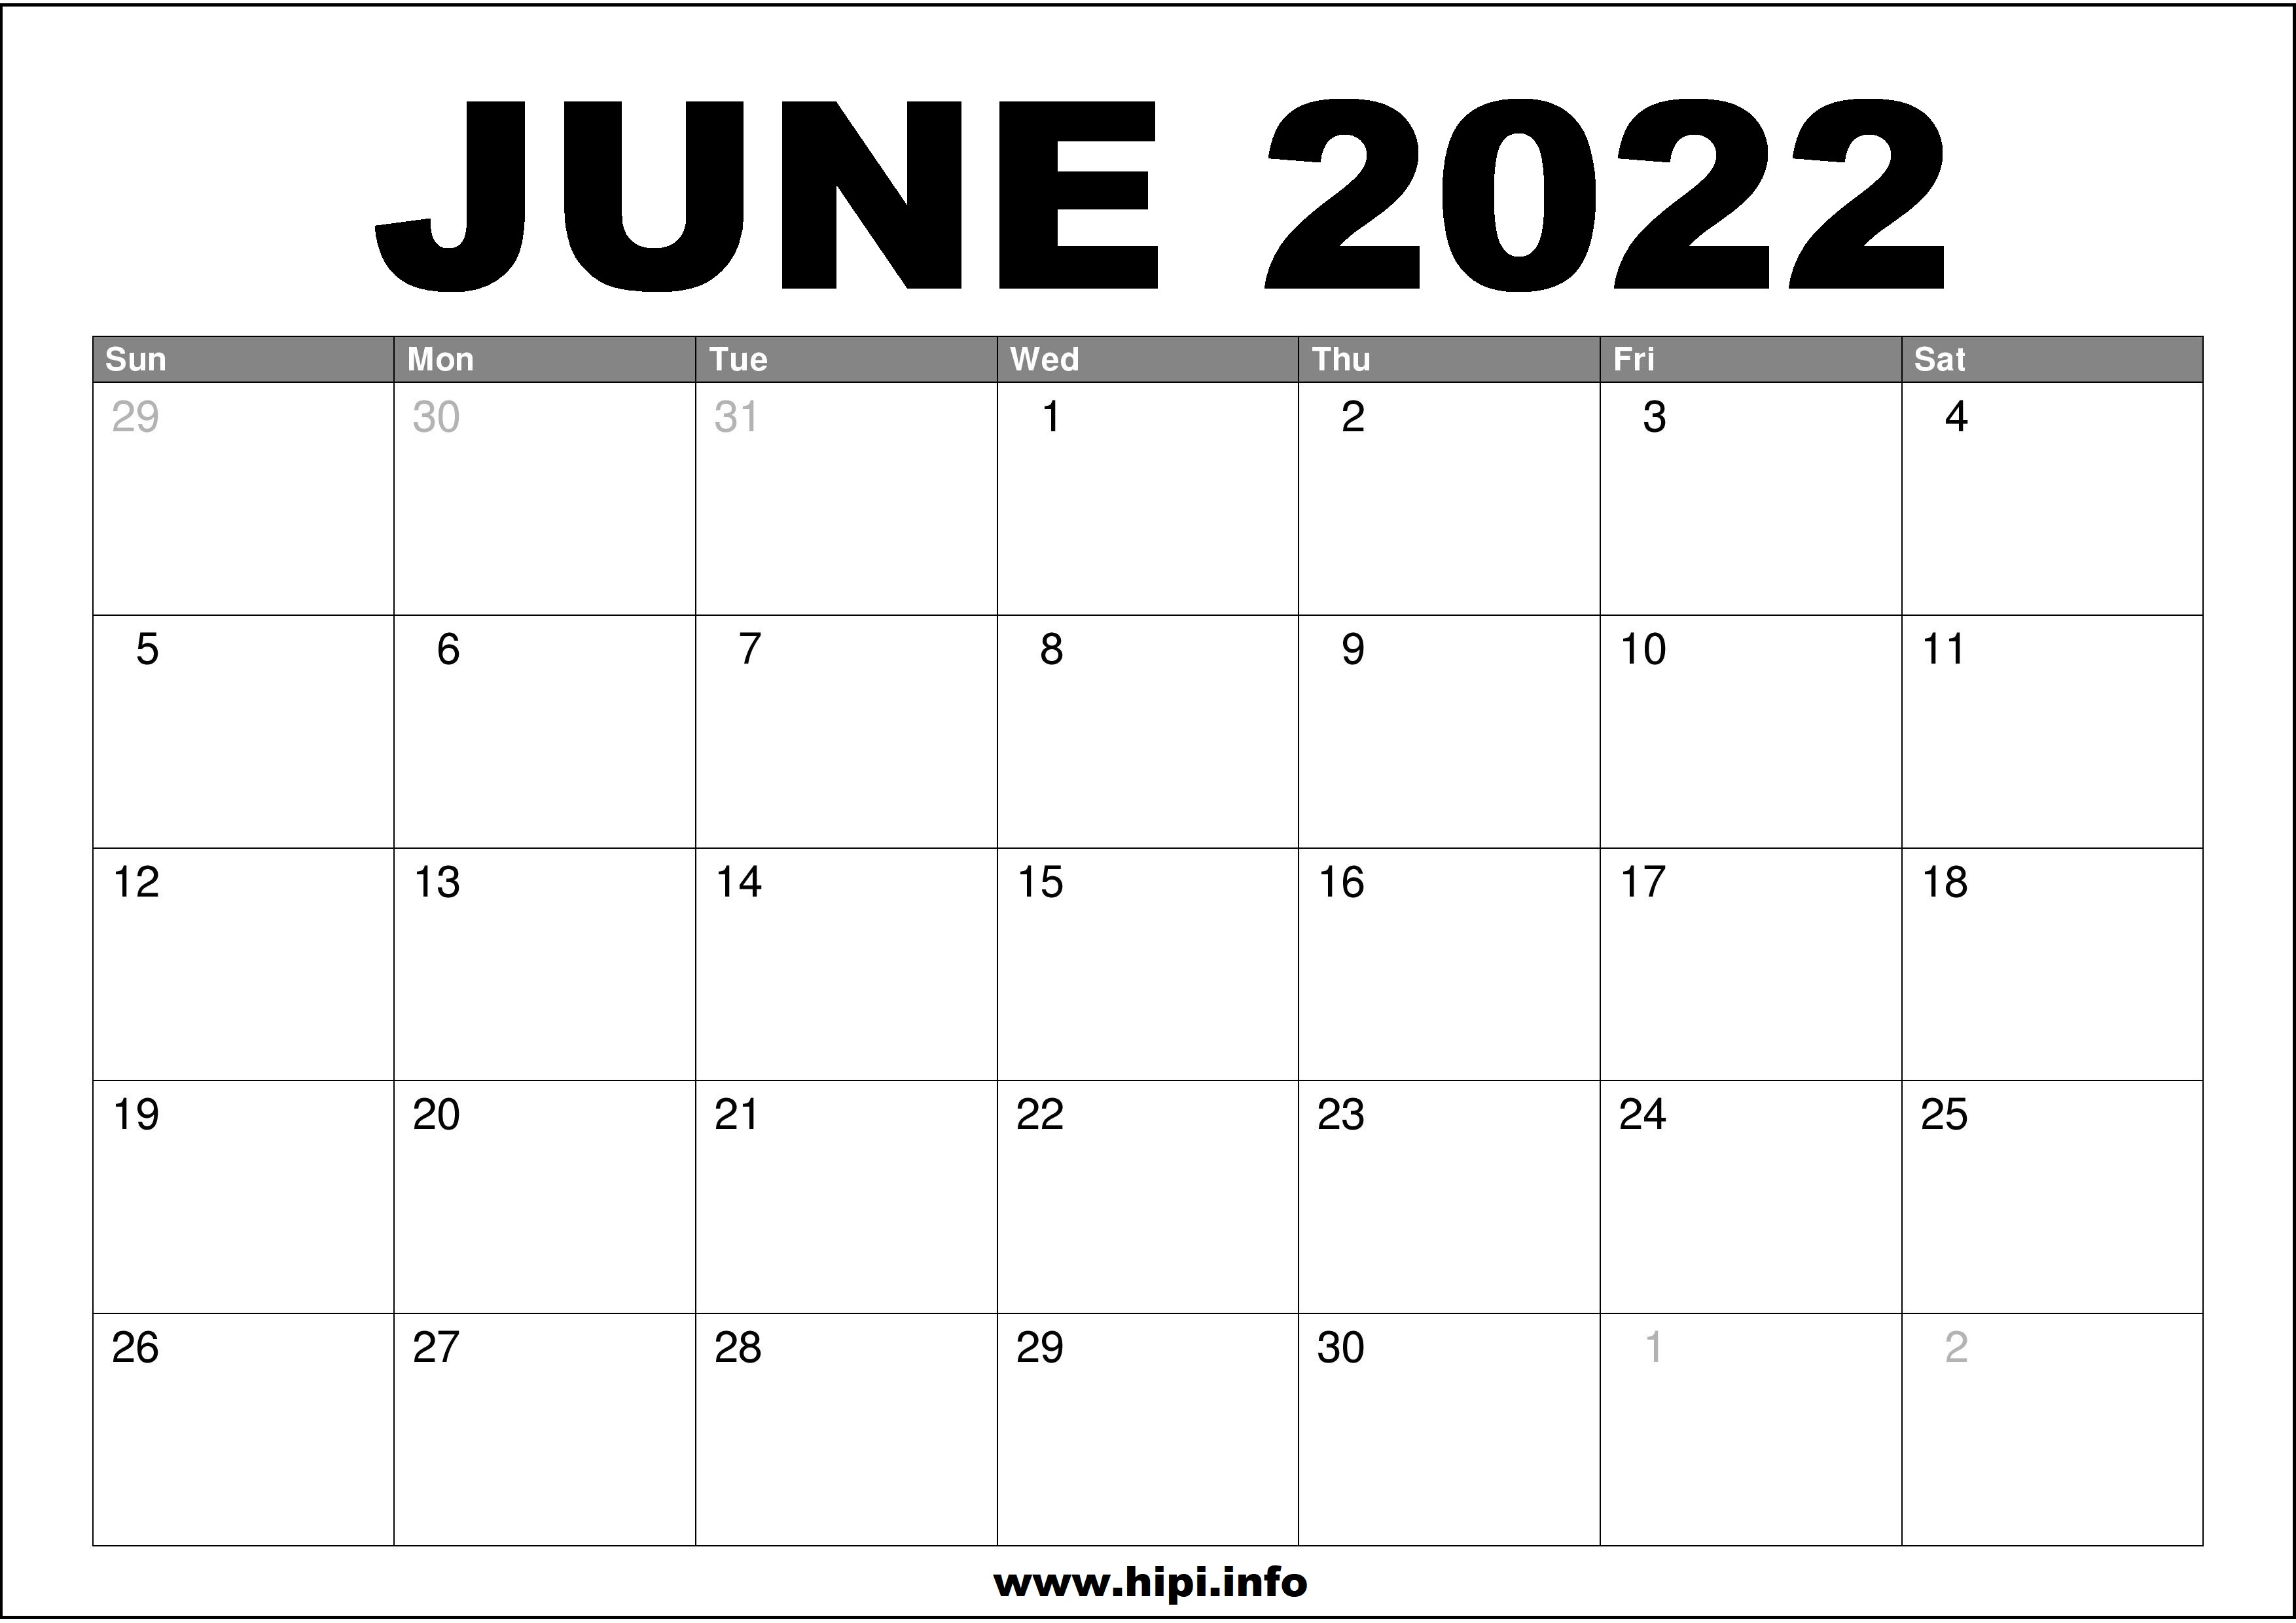 Month Calendar June 2022 June 2022 Calendar Printable Free - Hipi.info | Calendars Printable Free